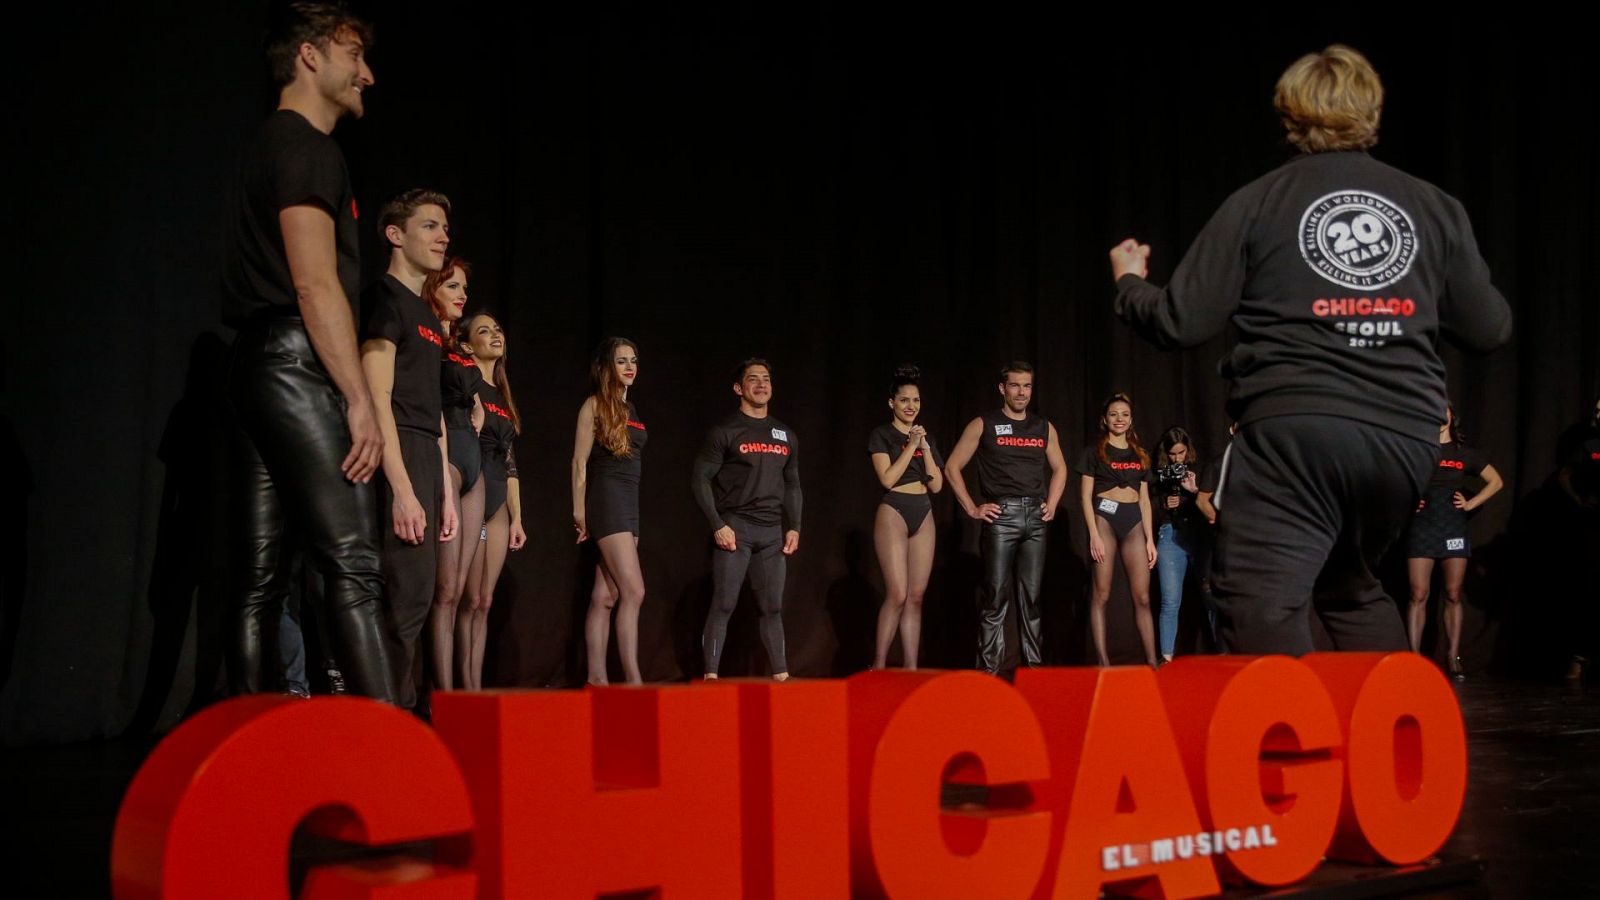 El musical 'Chicago' elige su elenco para su estreno en España